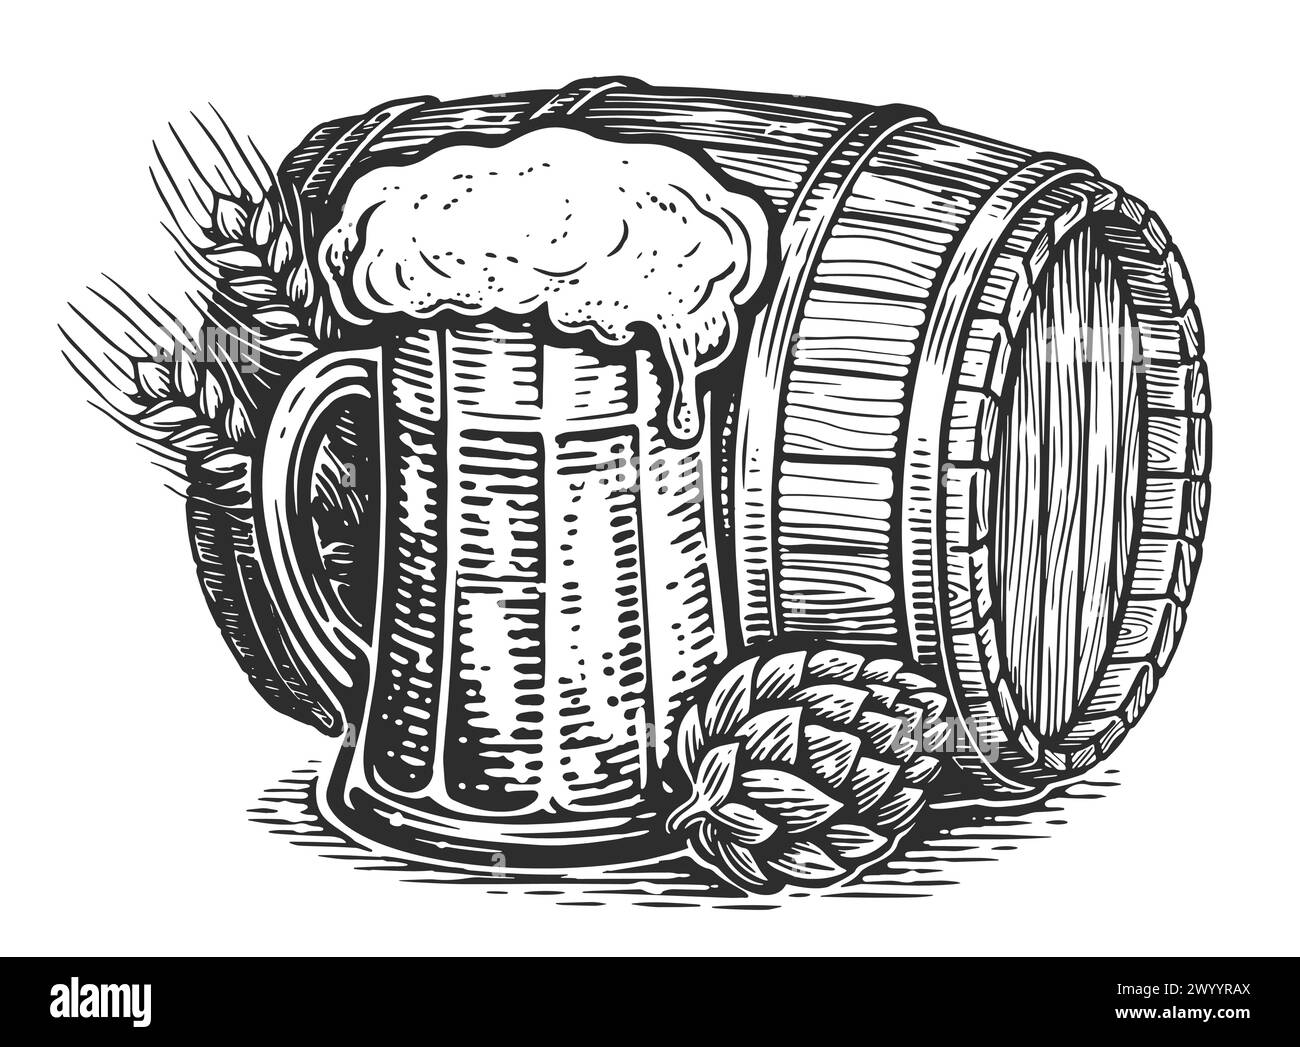 Bière en fût et tasse, style croquis. Illustration dessinée à la main pour le menu de pub, brasserie ou restaurant Illustration de Vecteur